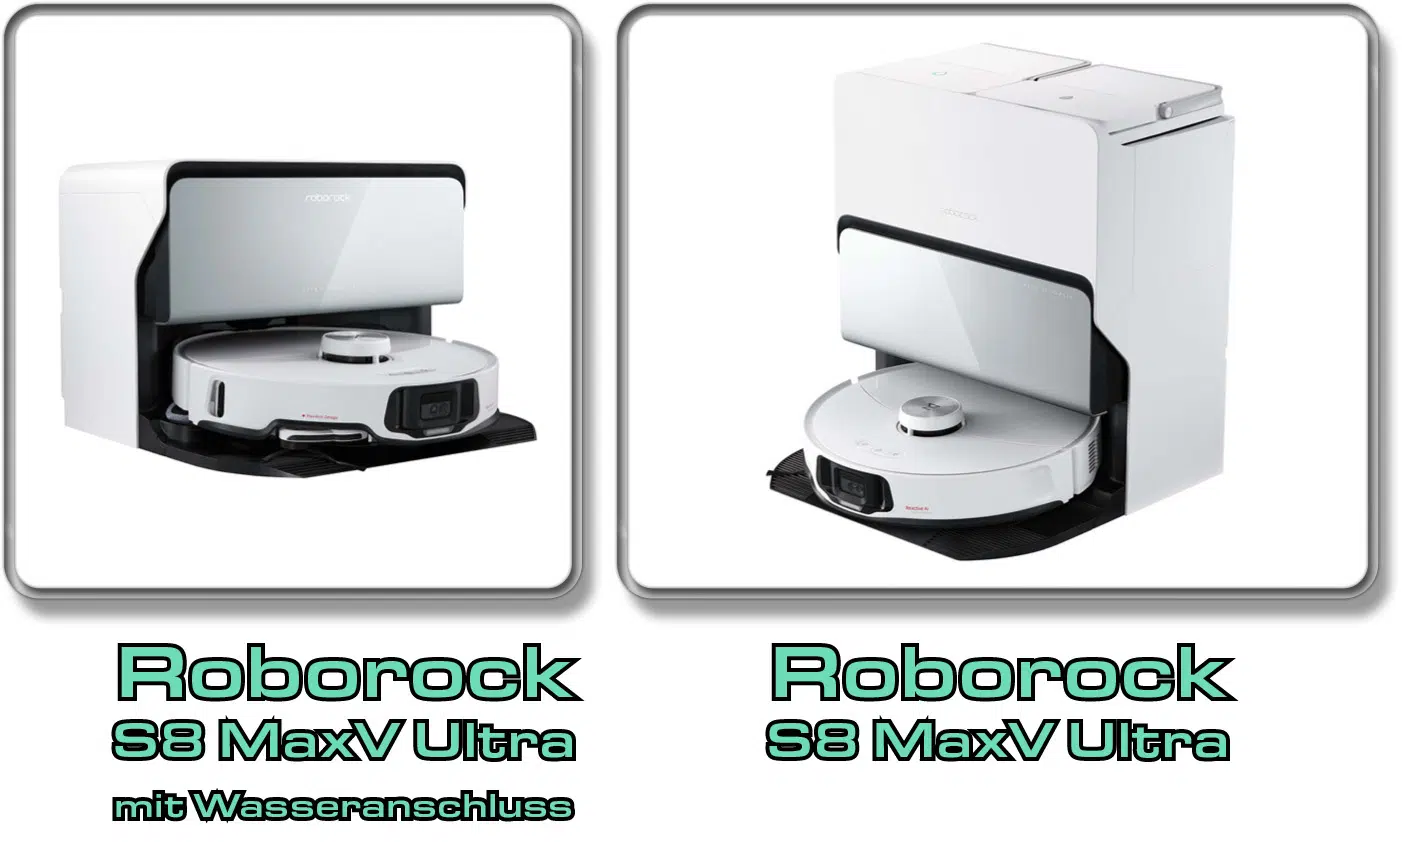 Das sind die Unterschieder der beiden Roborock S8 MaxV Ultra-Modelle